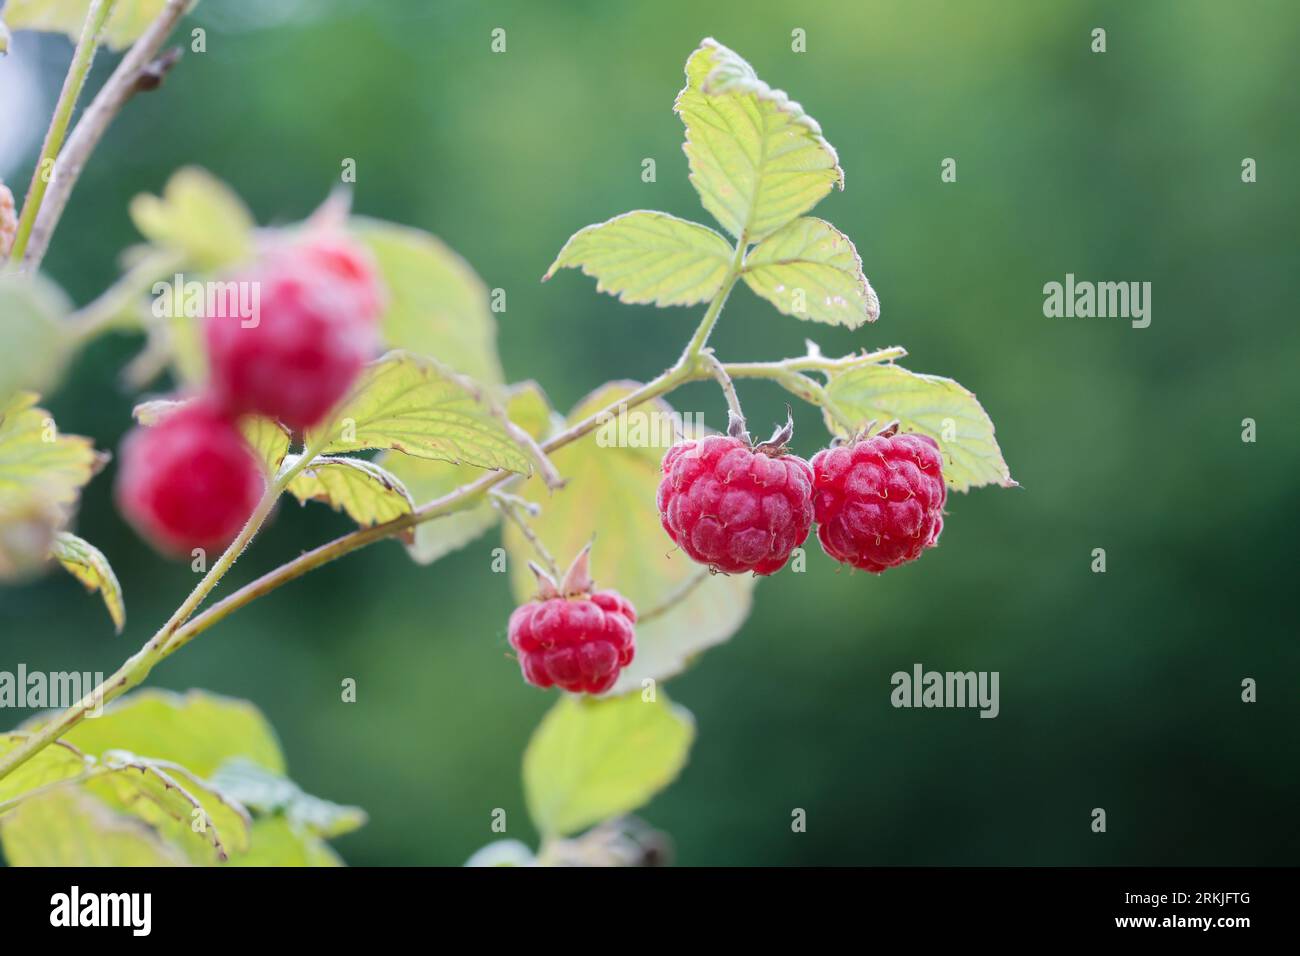 Wilde Himbeere, Himbeere, Himbeeren, Früchte, Beeren, Rubus idaeus, Raspberry, Rasp-berry, La framboise Stock Photo